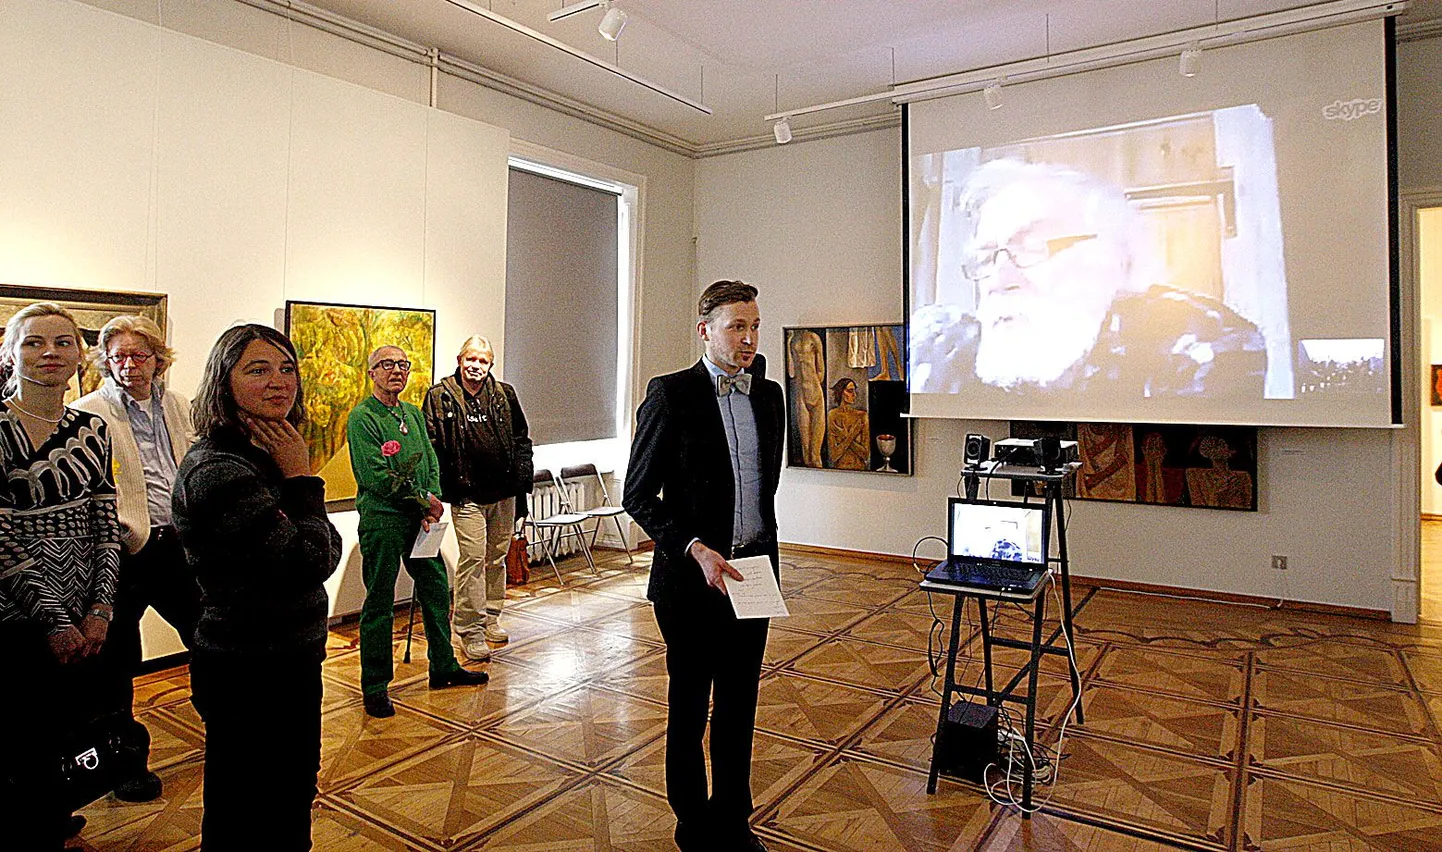 Näituse avamisel esinesid sõnavõtuga kunstnik Enn Põldroos (paremalt, ekraanil), väljapaneku koostaja Tõnis Tatar, kunstnik Silver Vahtre, kunstisõber Kalju Konsin ja Tartu kunstimuuseumi direktor Rael Artel.